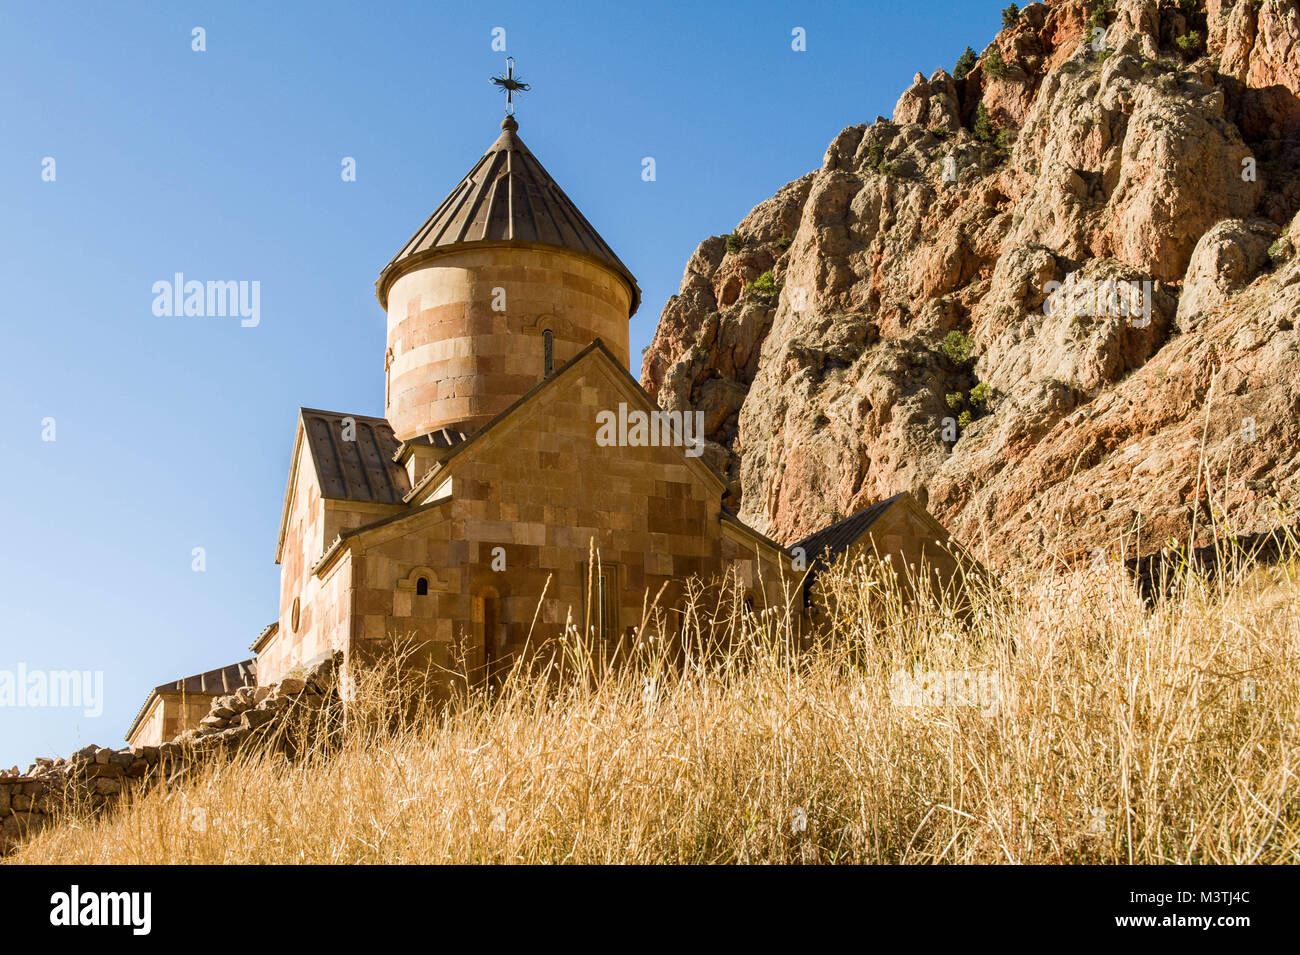 Noravank, il significato di "nuovo monastero' in armeno è un 13esimo secolo monastero armeno, situato a 122km da Yerevan in una stretta gola realizzata dall'Amaghu ri Foto Stock